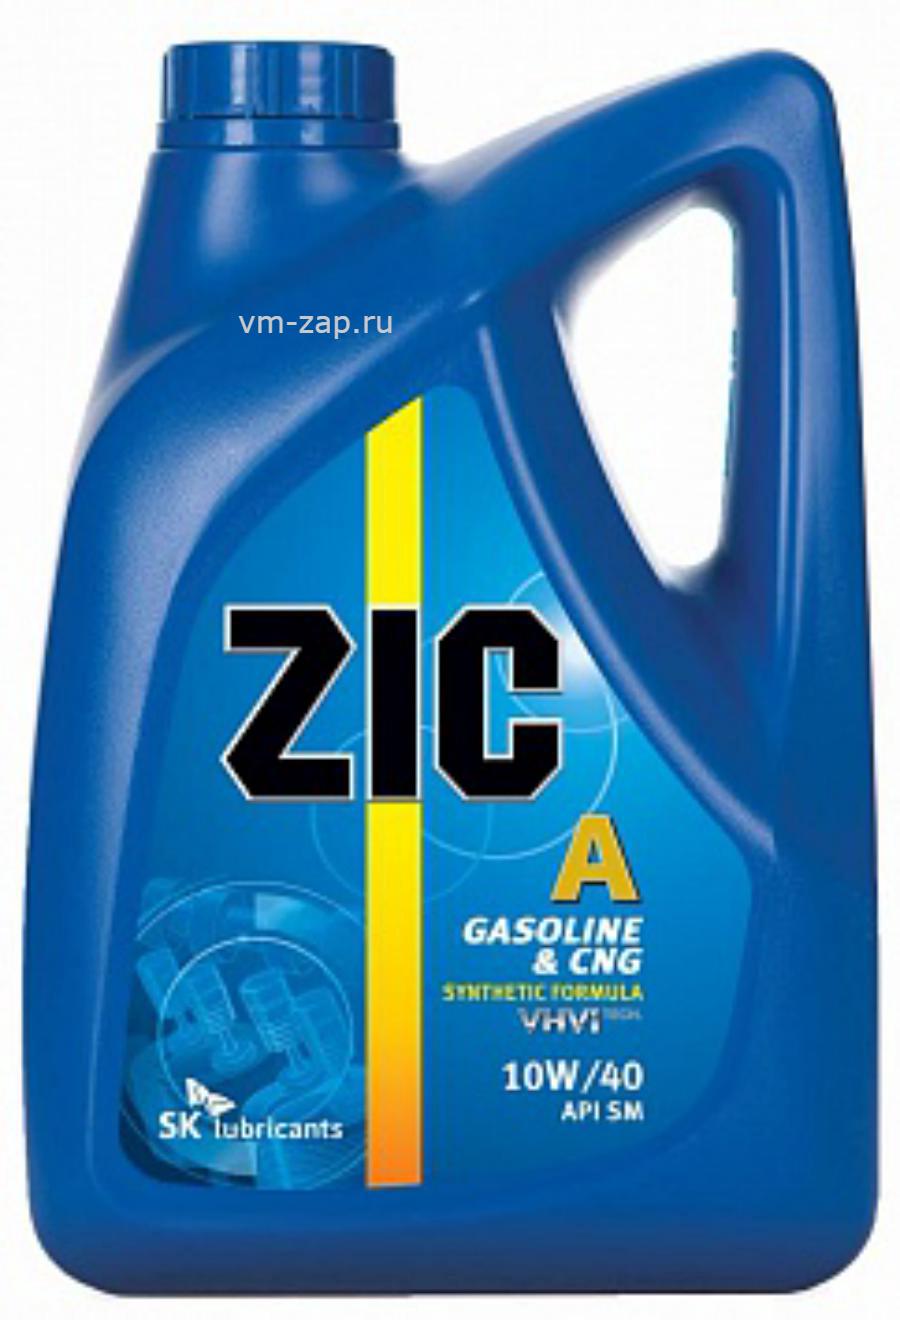 Полусинтетическое масло zic. ZIC полусинтетика 10w-40 6 л.. ZIC 10-40 полусинтетика. Масло ZIC 10w 40 полусинтетика. ZIC A+ 10w-40 полусинтетика.